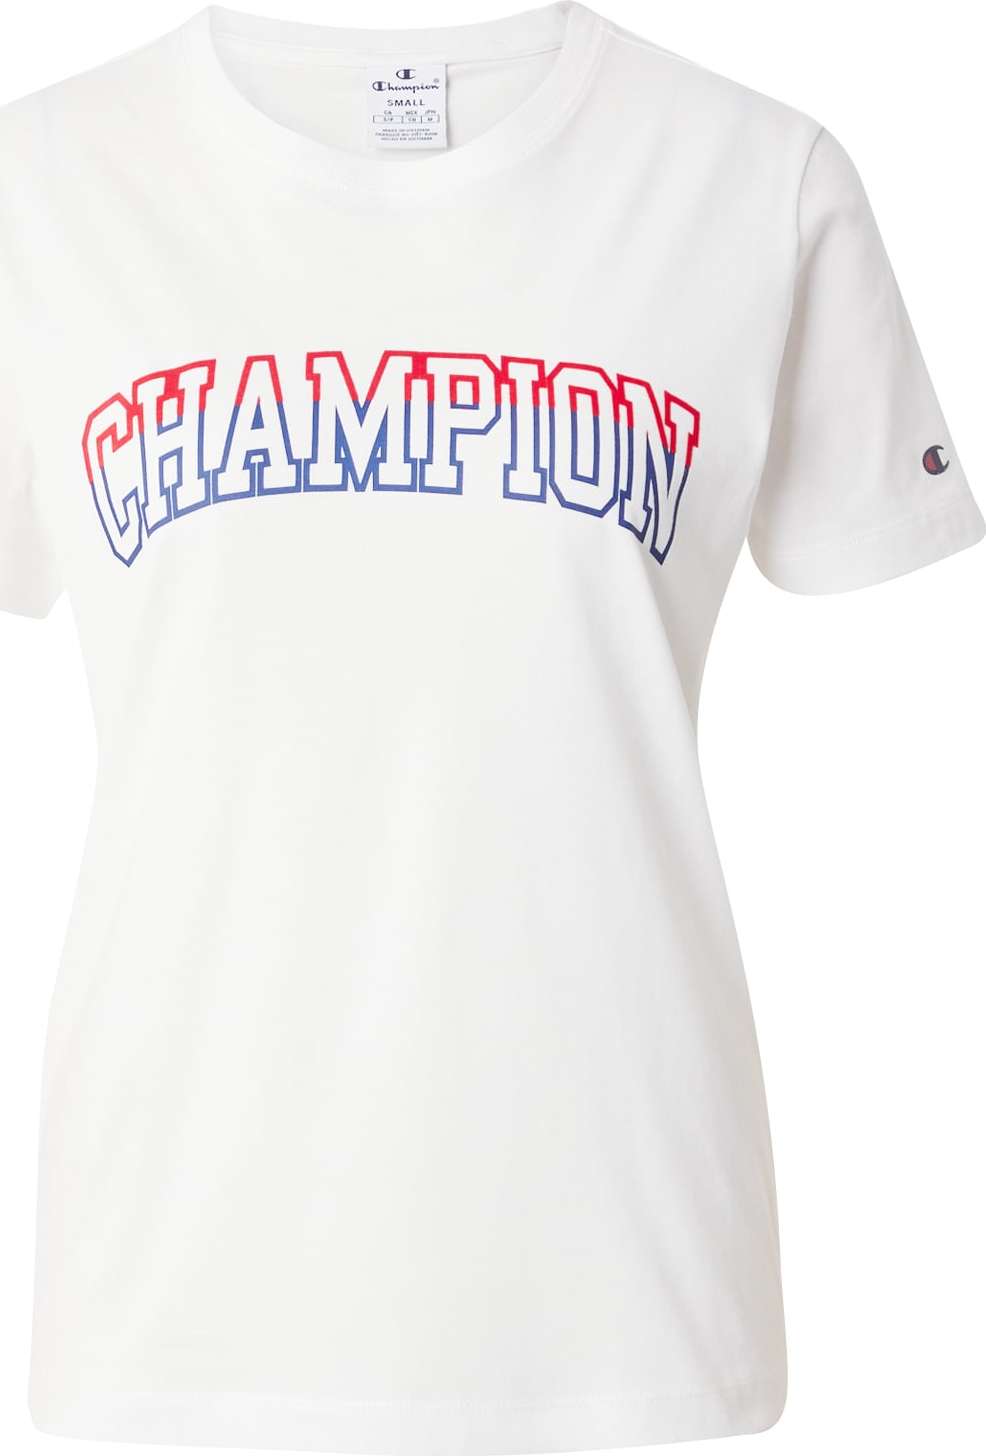 Tričko Champion Authentic Athletic Apparel modrá / svítivě červená / bílá